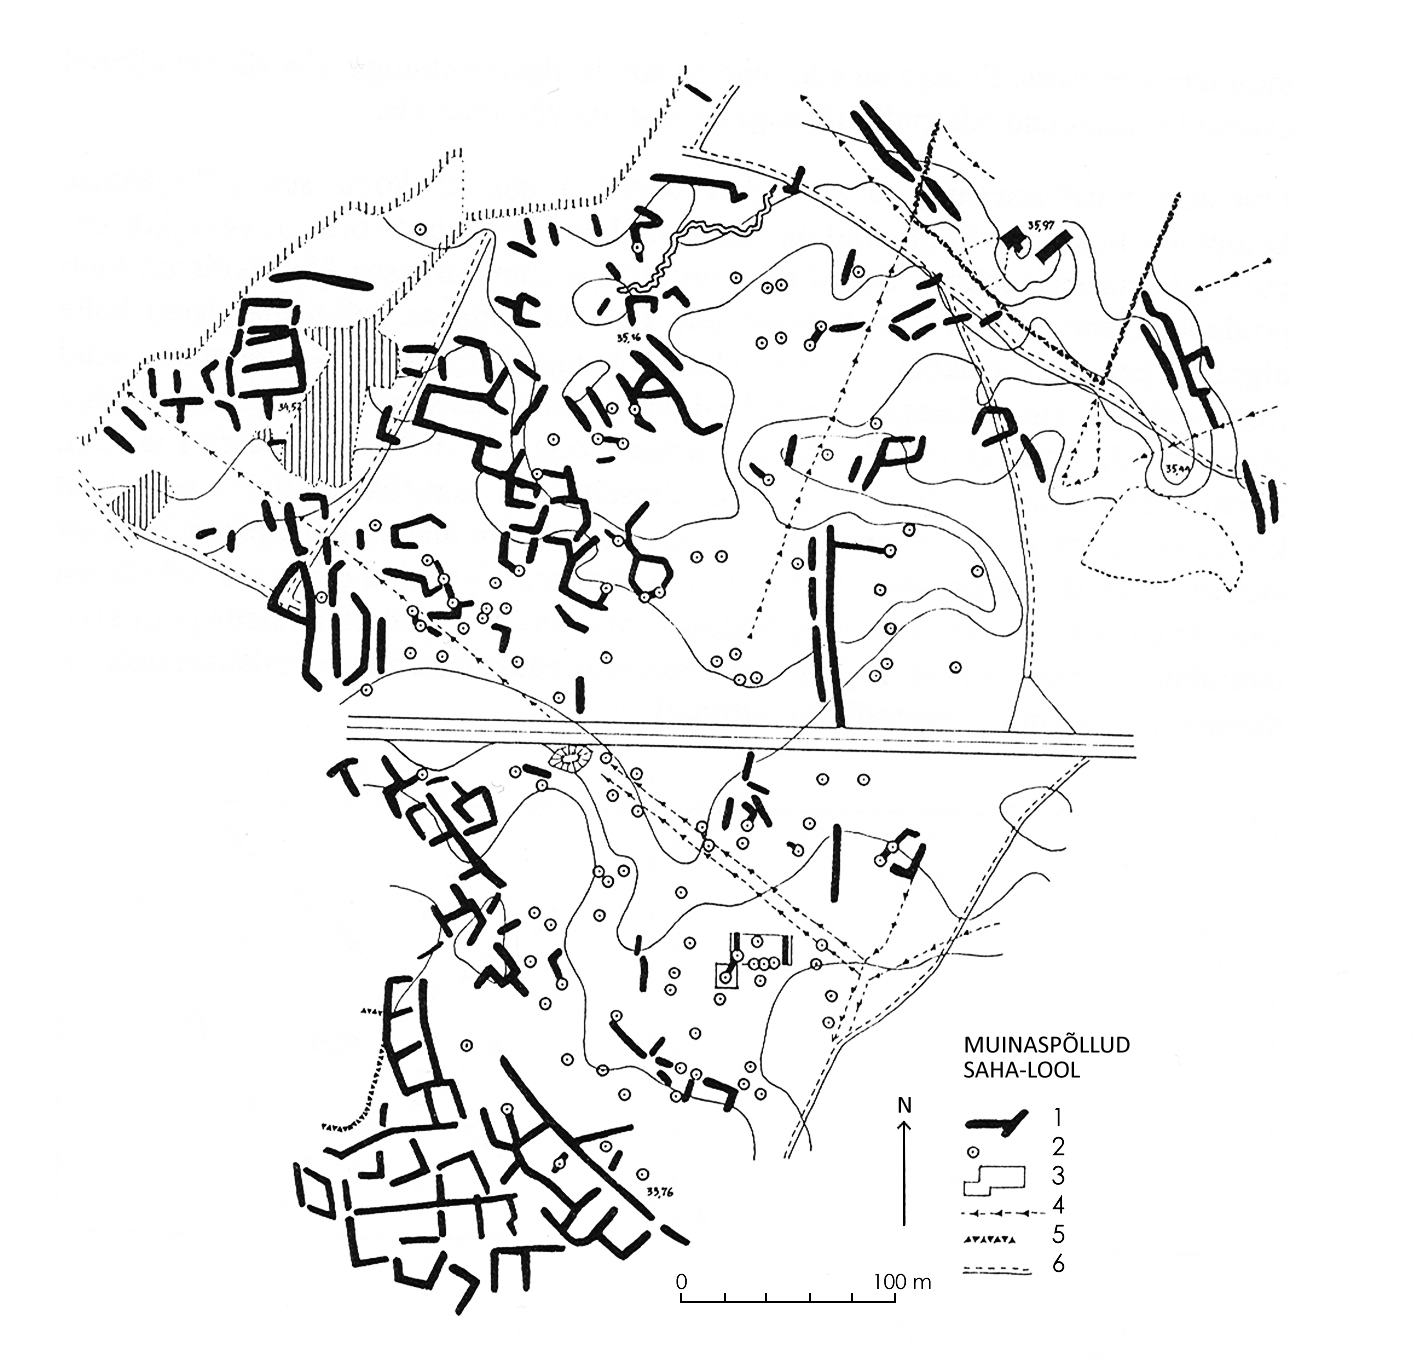 Saha-Loo muinaspõldude jäänuste paiknemise plaan. Põllulapid olid tihti nelinurksed või ristkülikukujulised, madala kivivalliga piiratud peenrad. 